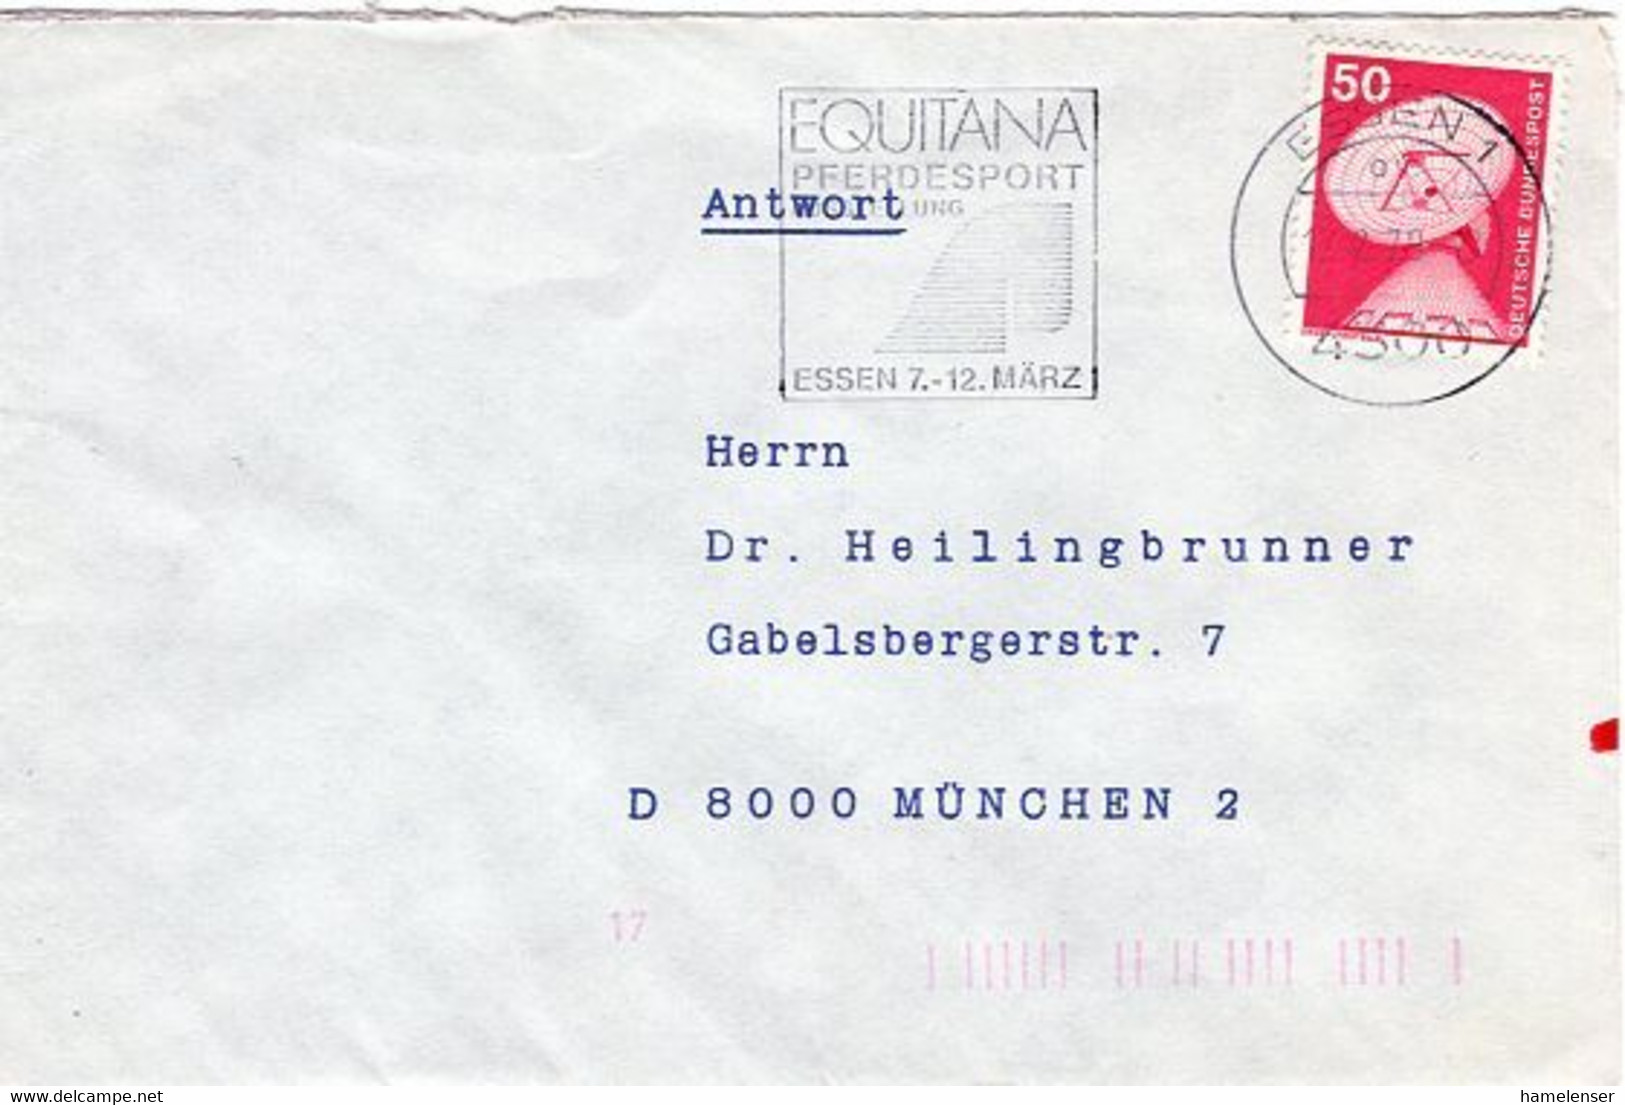 52662 - Bund - 1978 - 50Pfg I&T EF A Bf MaschStpl ESSEN - EQUITANA PFERDESPORT ... -> Muenchen - Hippisme